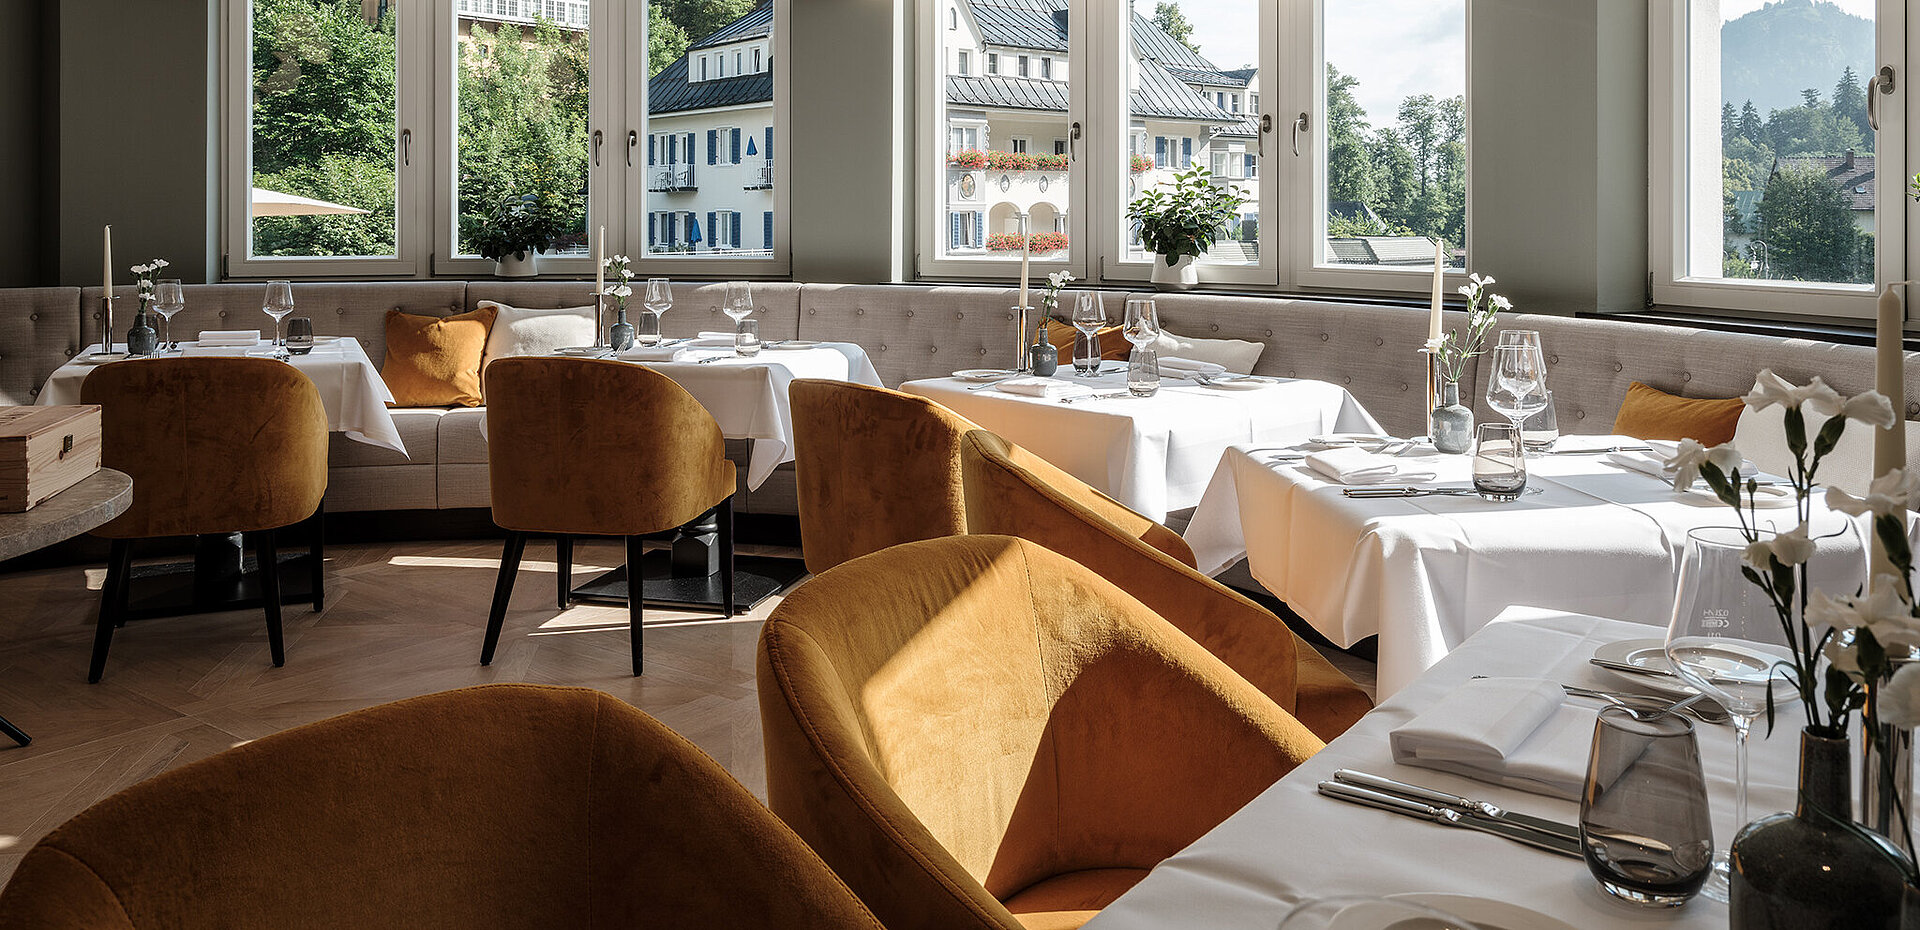 AMERON Neuschwanstein Alpsee Resort & Spa Restaurant Lisl gedeckte tische